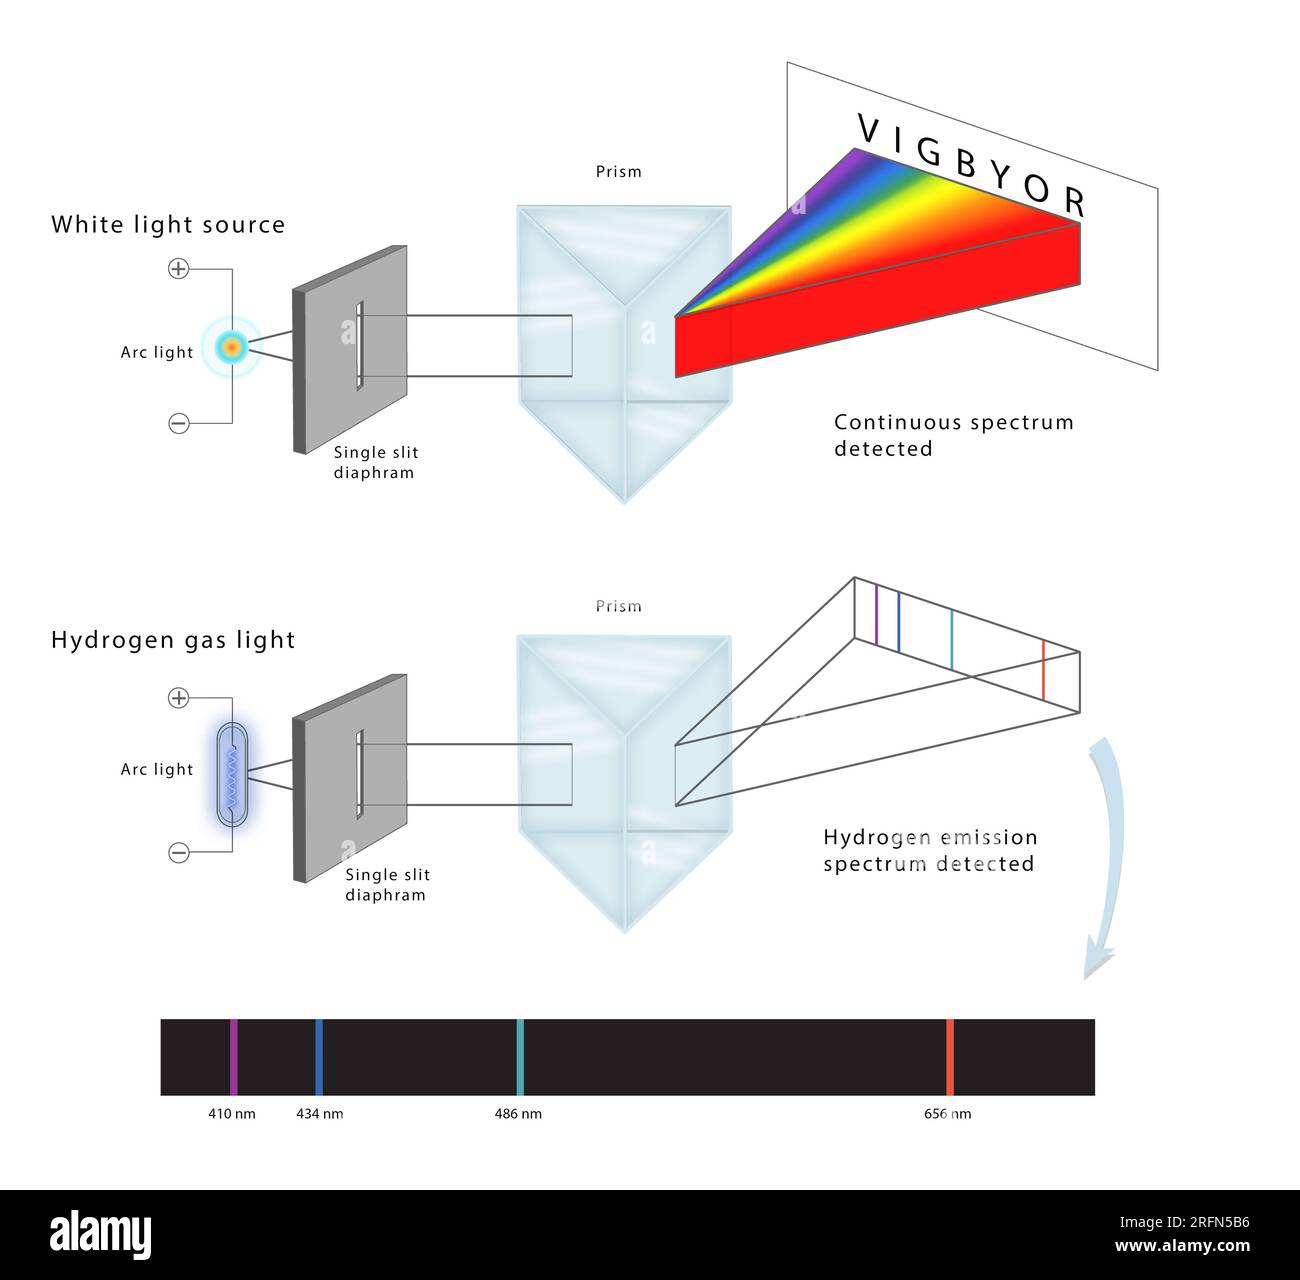 Eine Abbildung, die ein physikalisches Experiment der Einzelschlitzbeugung zeigt. Oben wird ein weißes Licht angezeigt, das durch einen einzelnen Schlitz, ein Prisma und das gesamte kontinuierliche Spektrum durchdringt. Die Unterseite zeigt Wasserstofflicht, das durch einen einzelnen Schlitz, ein Prisma und die spezifischen Wellenlängen des erkannten Spektrums fließt. Stockfoto